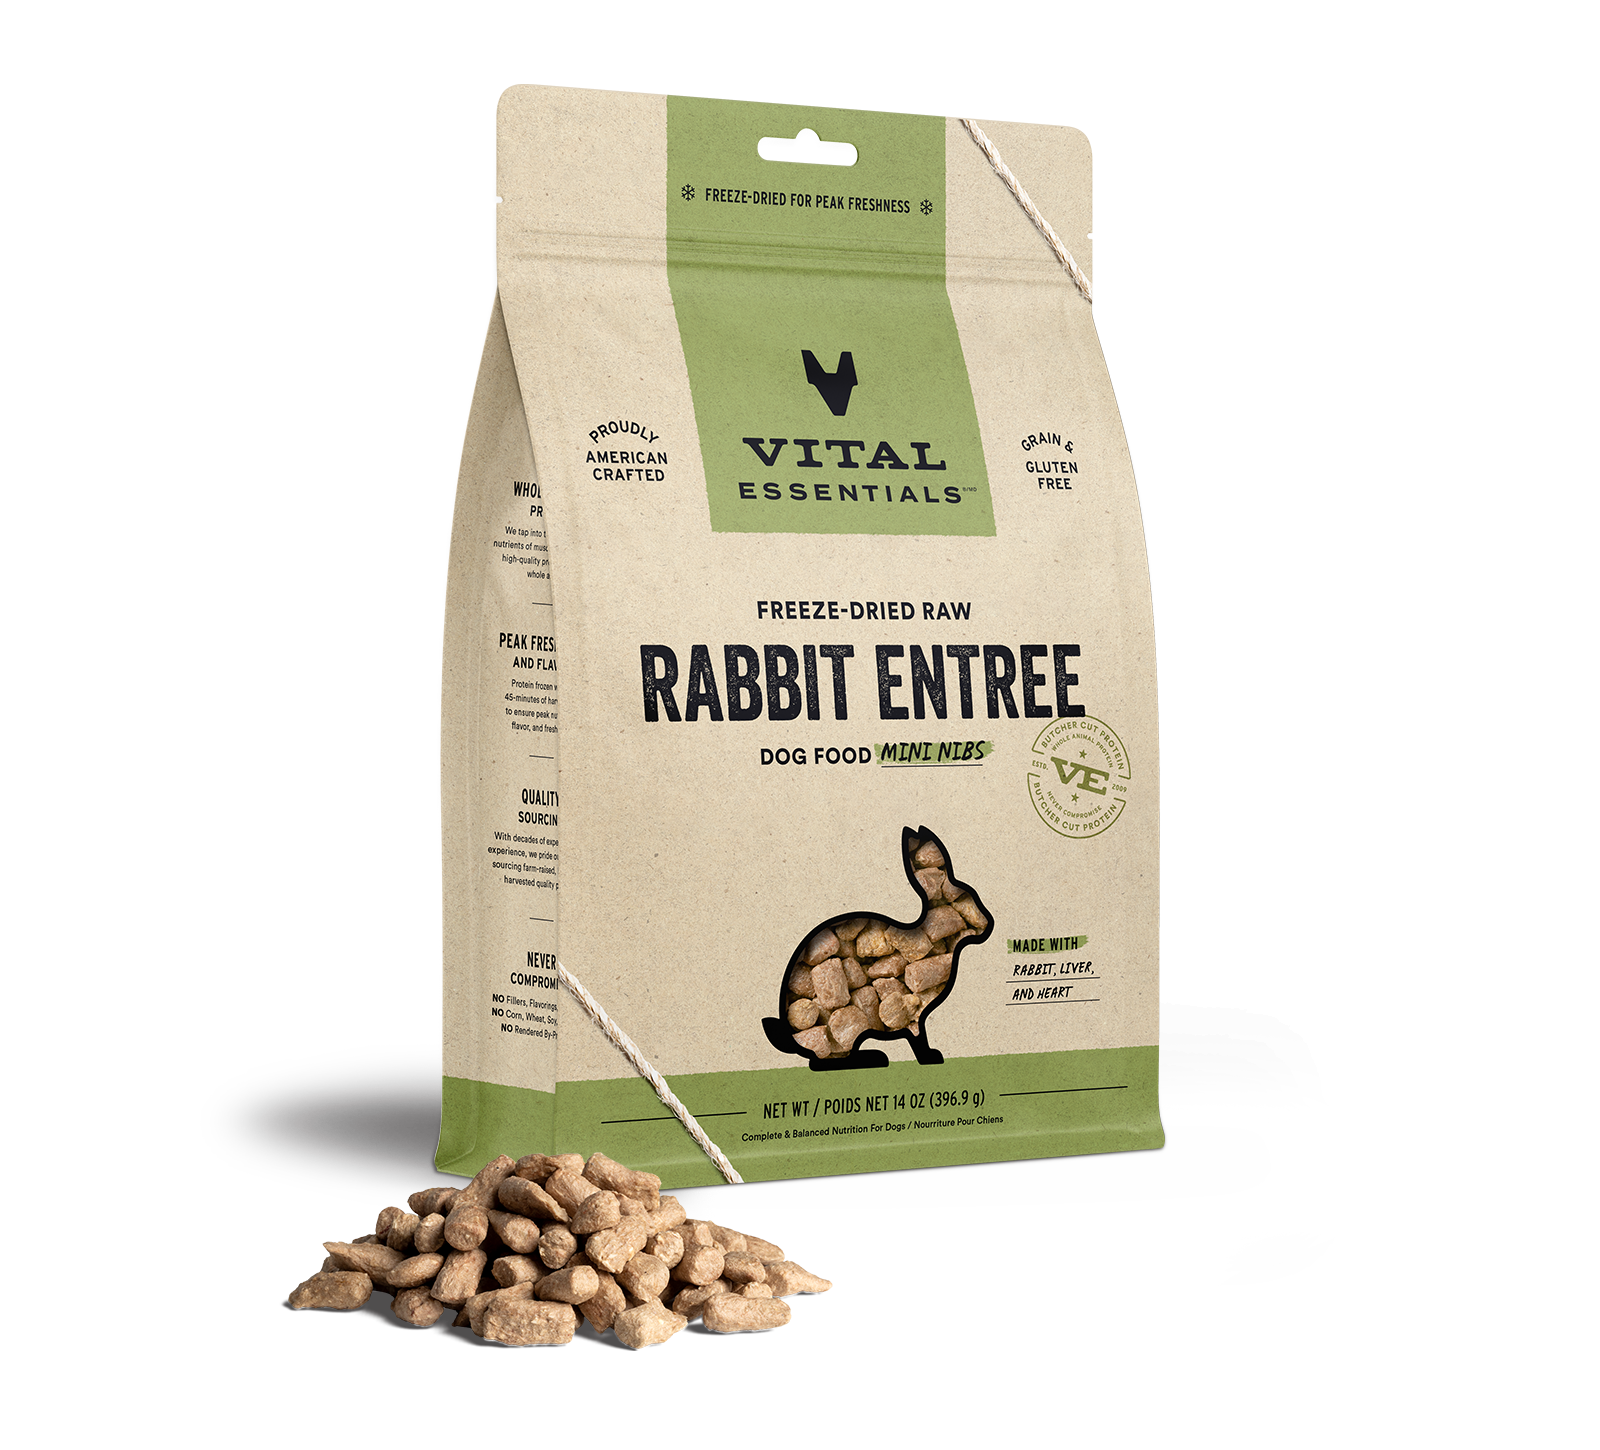 Vital Essentials Freeze-Dried Raw Rabbit Entree Dog Food Mini Nibs, 14 oz - Items on Sale Now